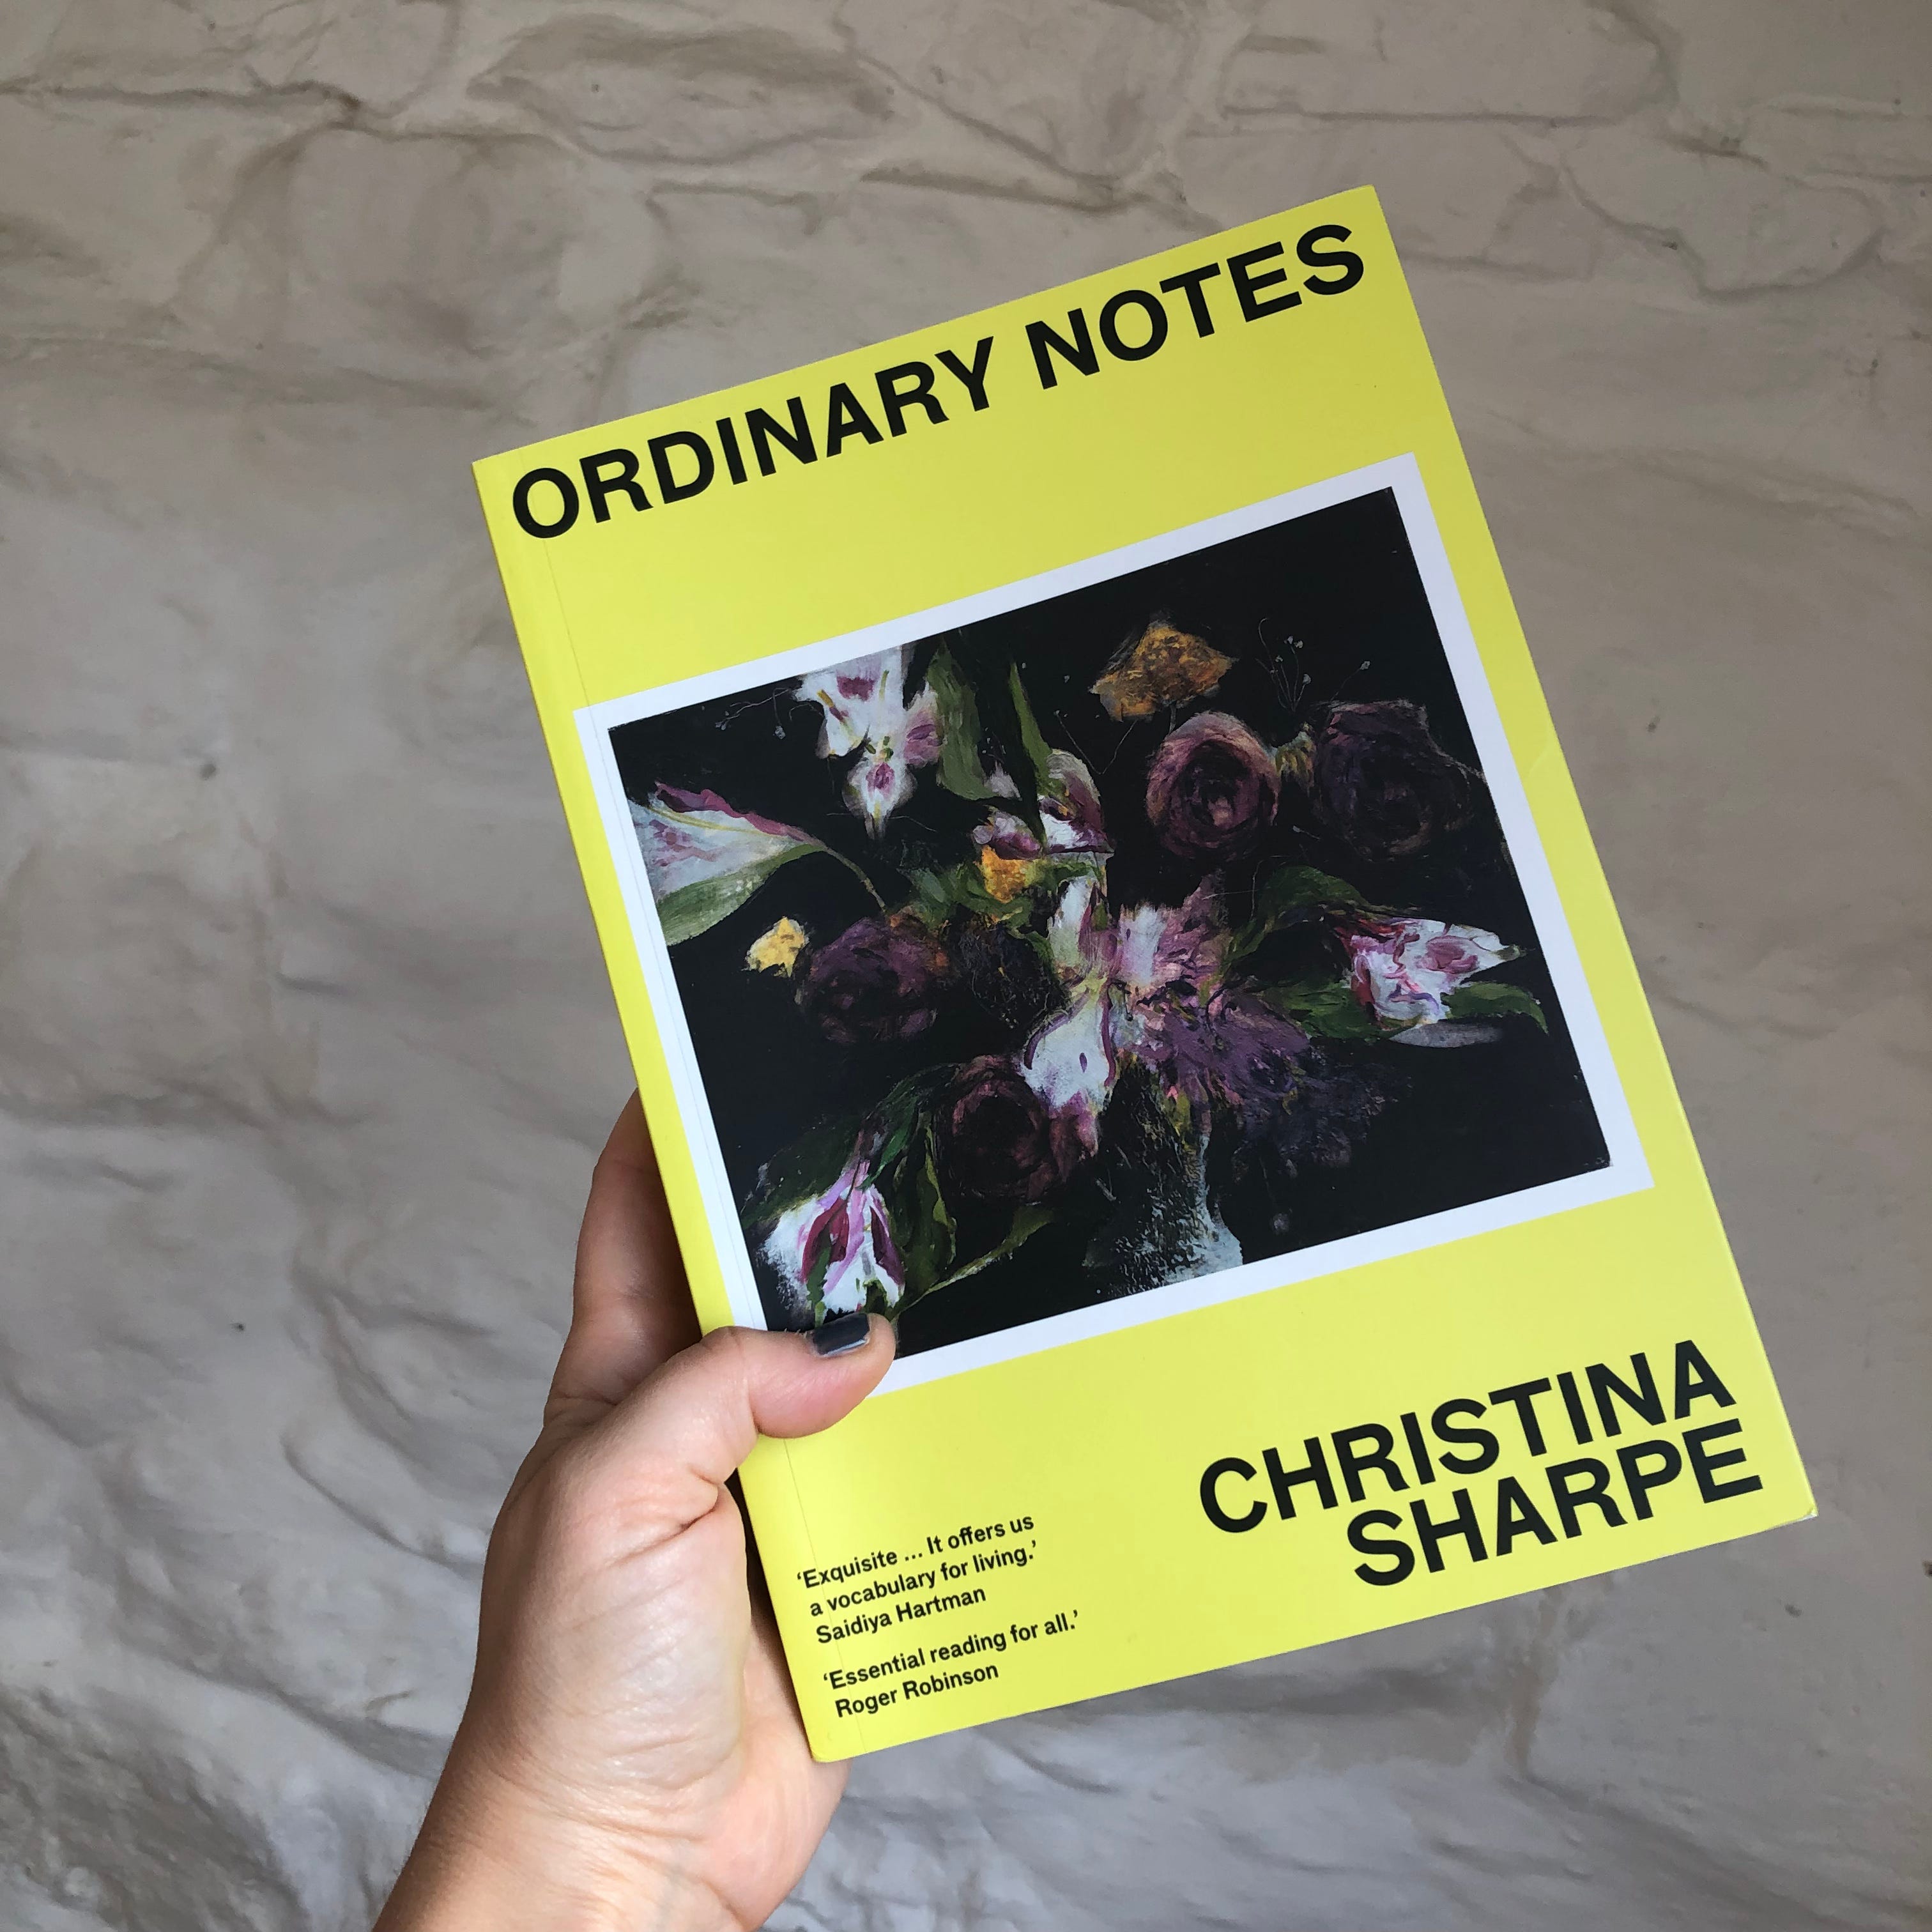 Ordinary Notes